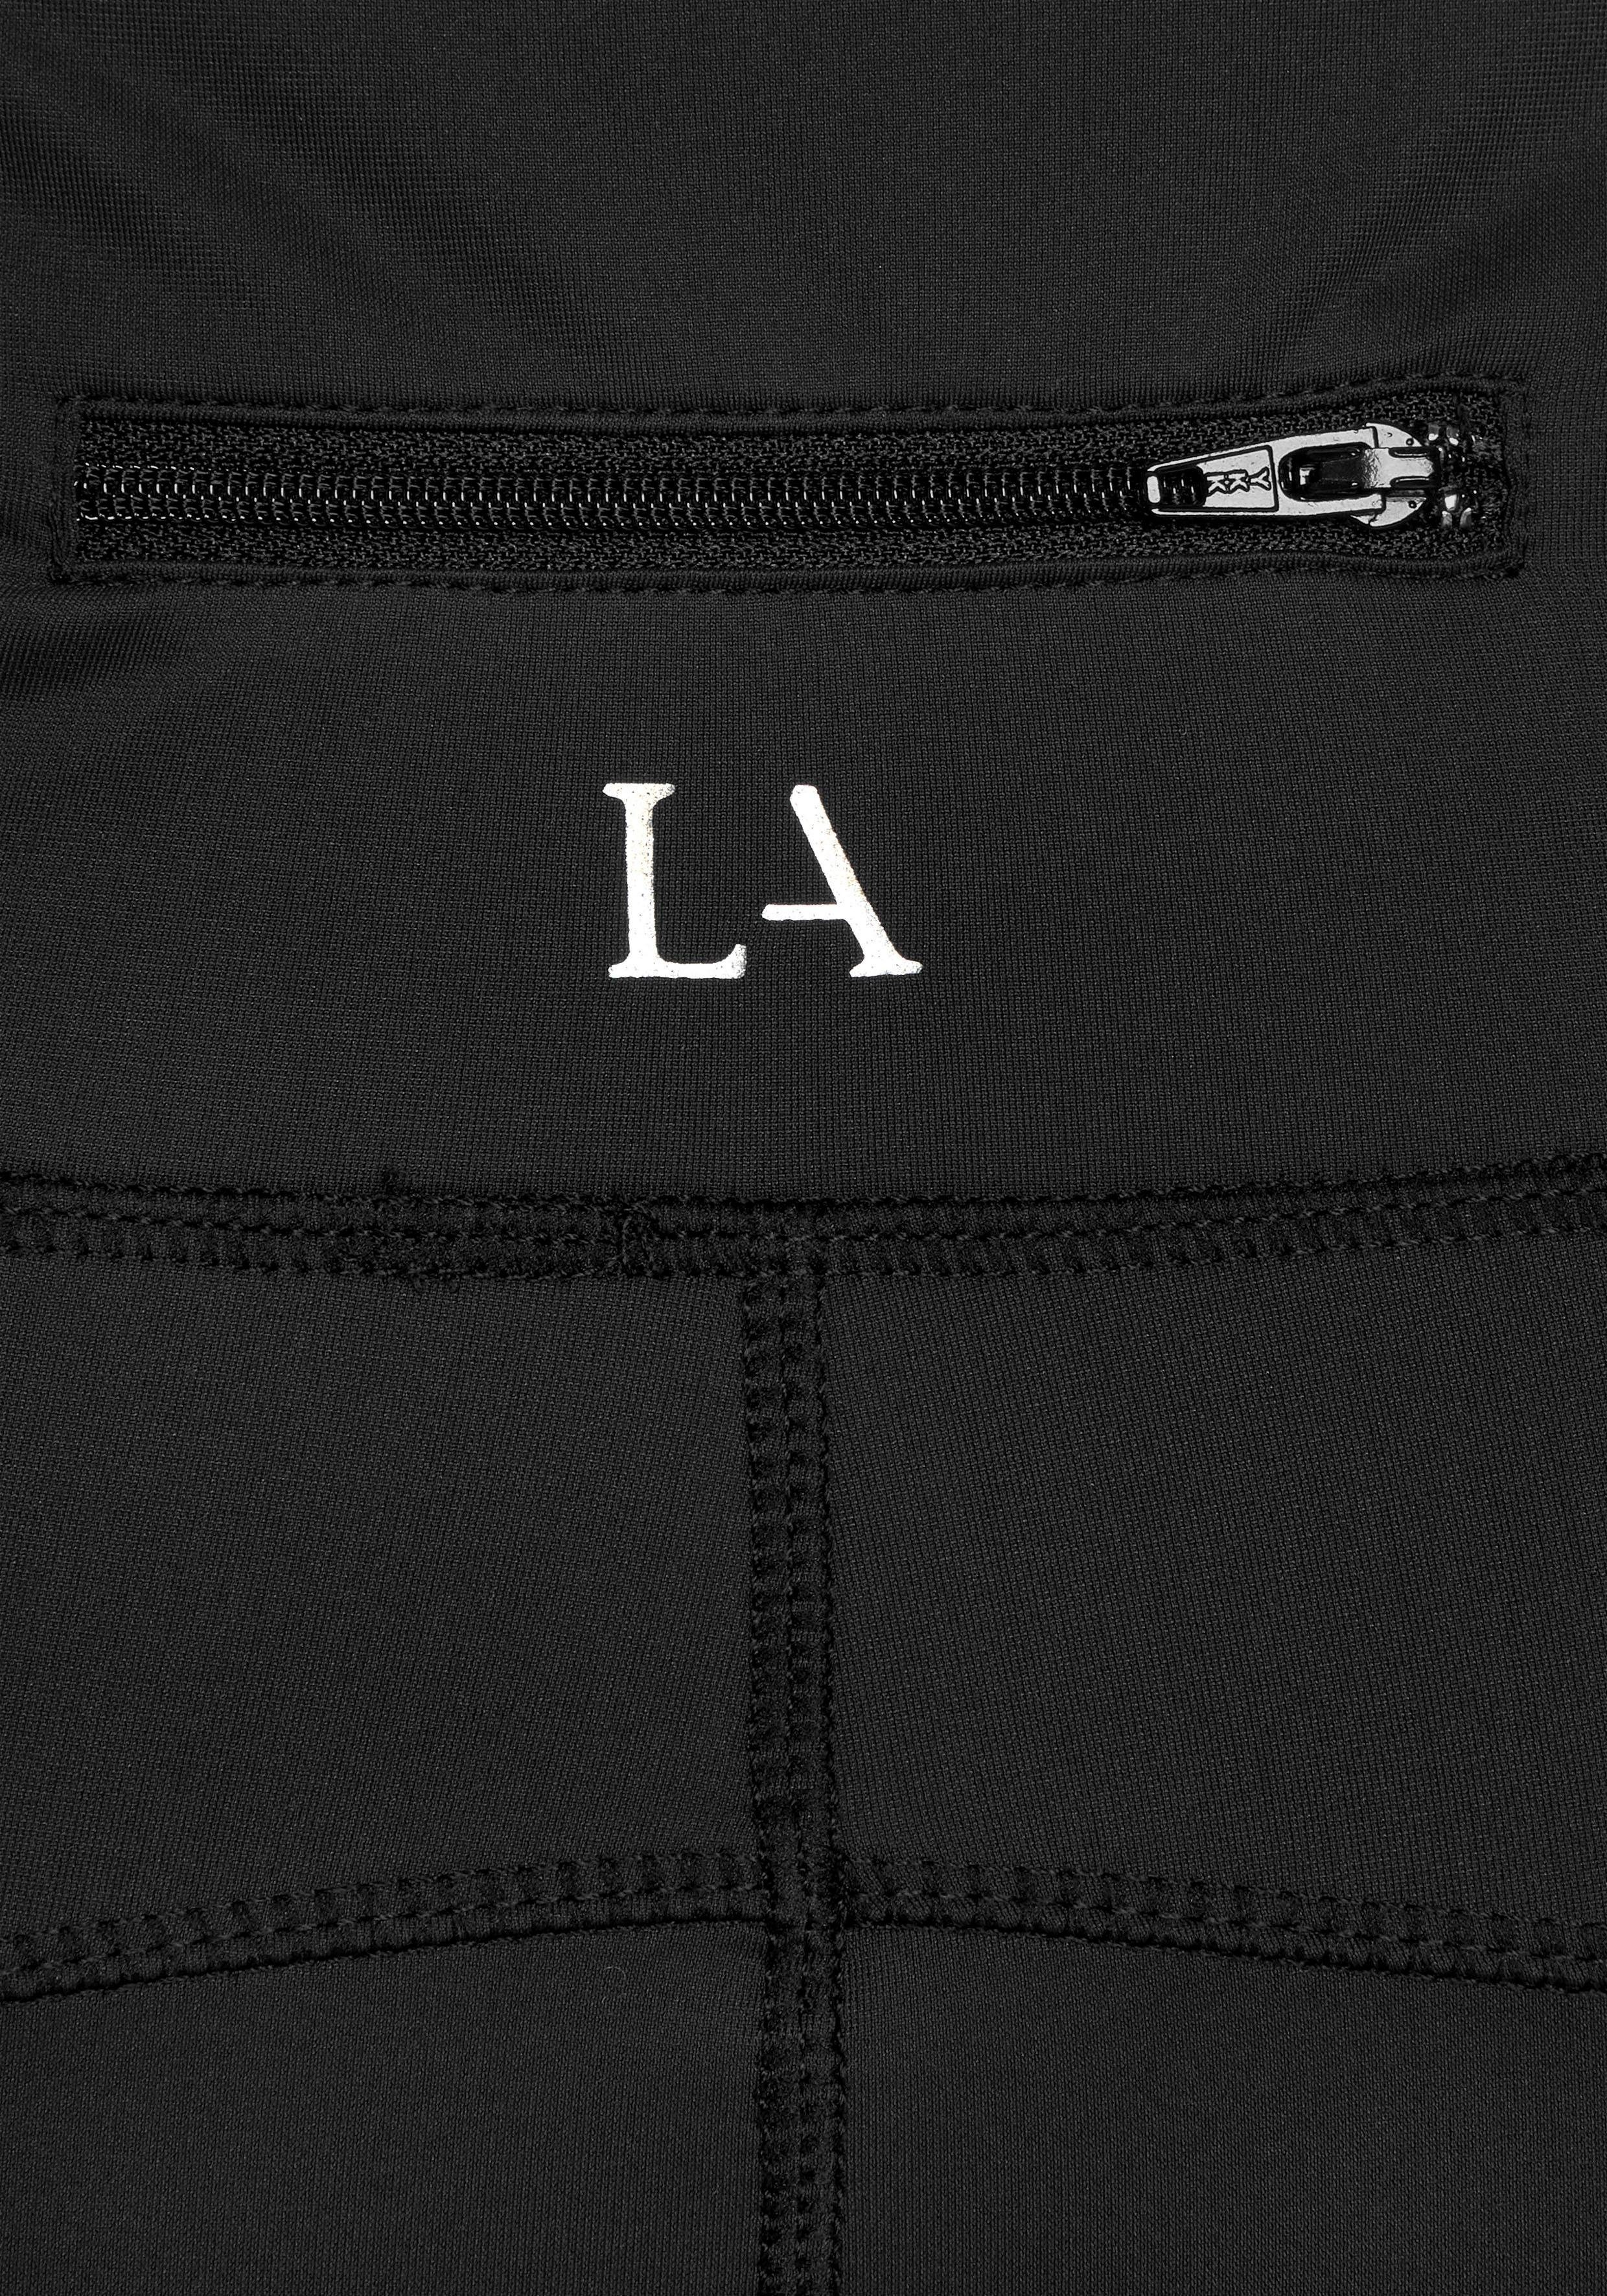 Sport Sporthosen LASCANA ACTIVE Radlerhose Basic Bottoms mit kleiner Bundtasche hinten